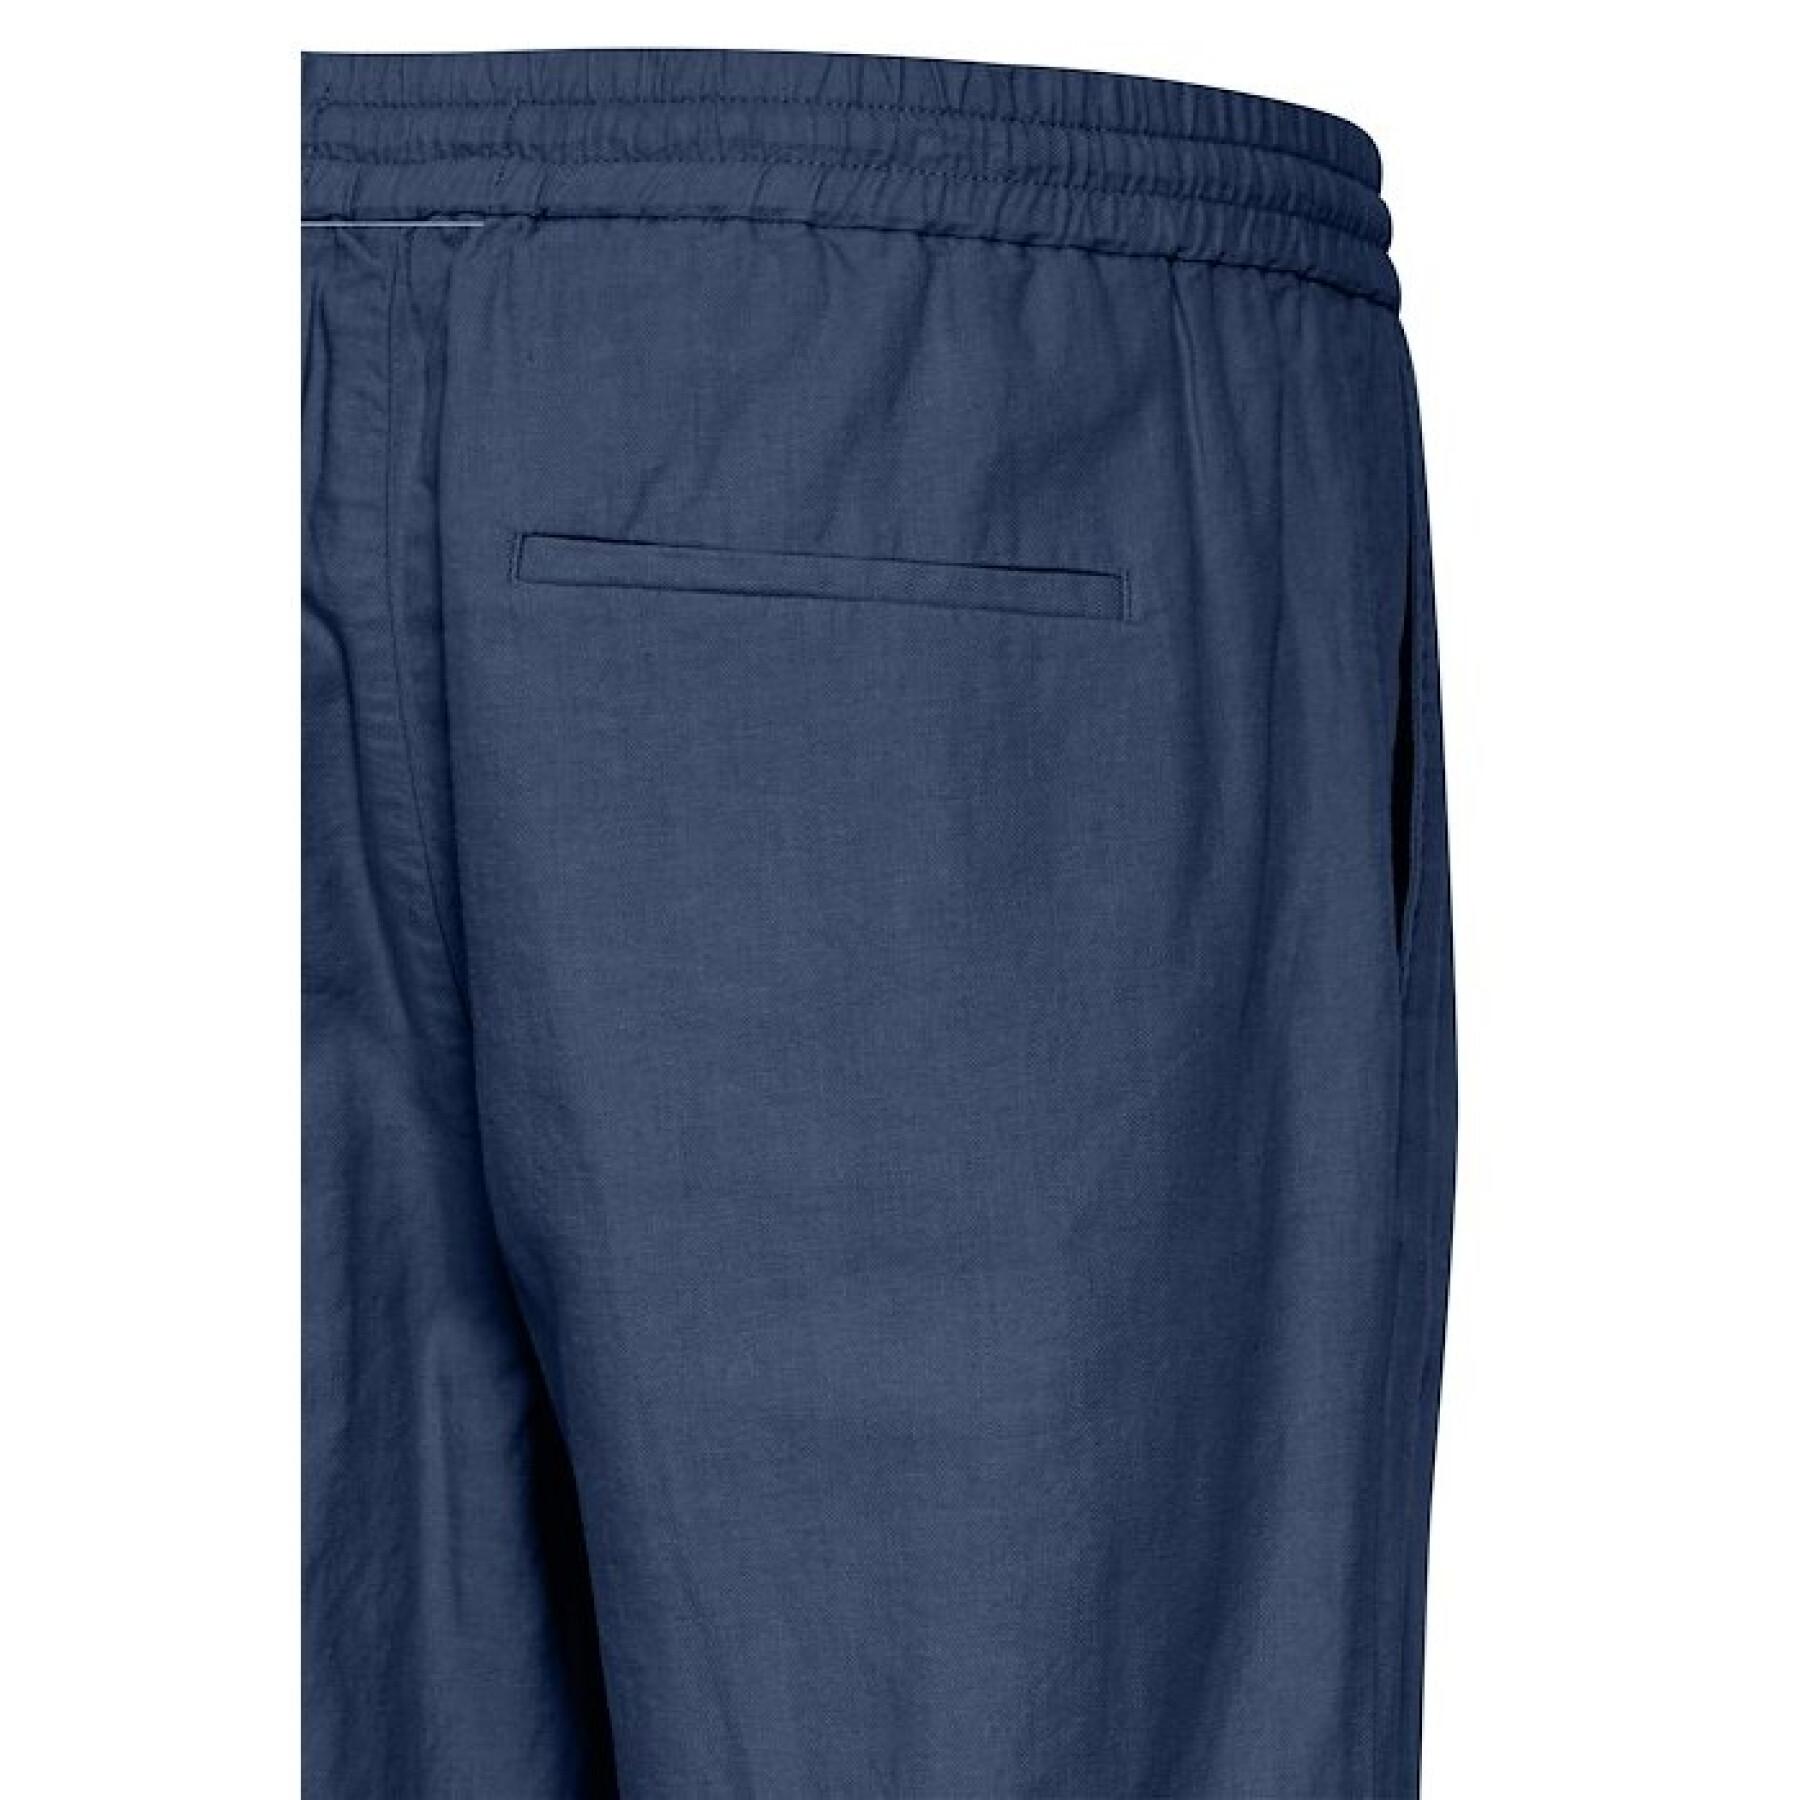 Pantalon lin Casual Friday Pilou 0080